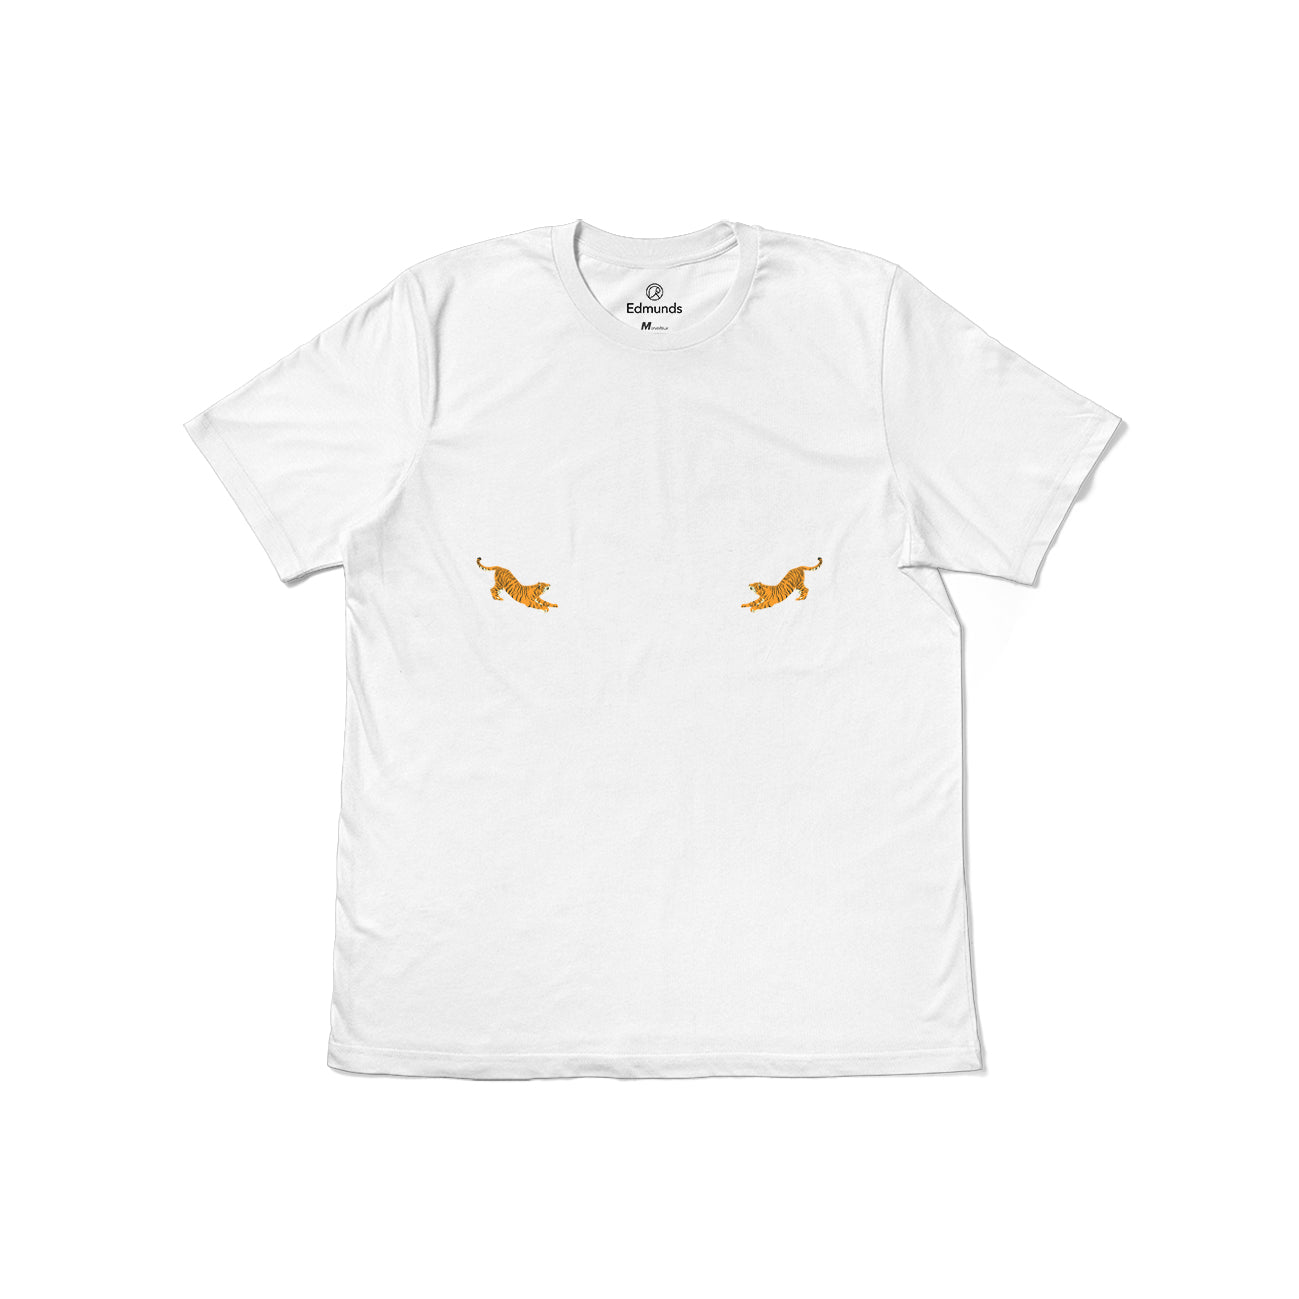 T-Shirt Femme - Tiger